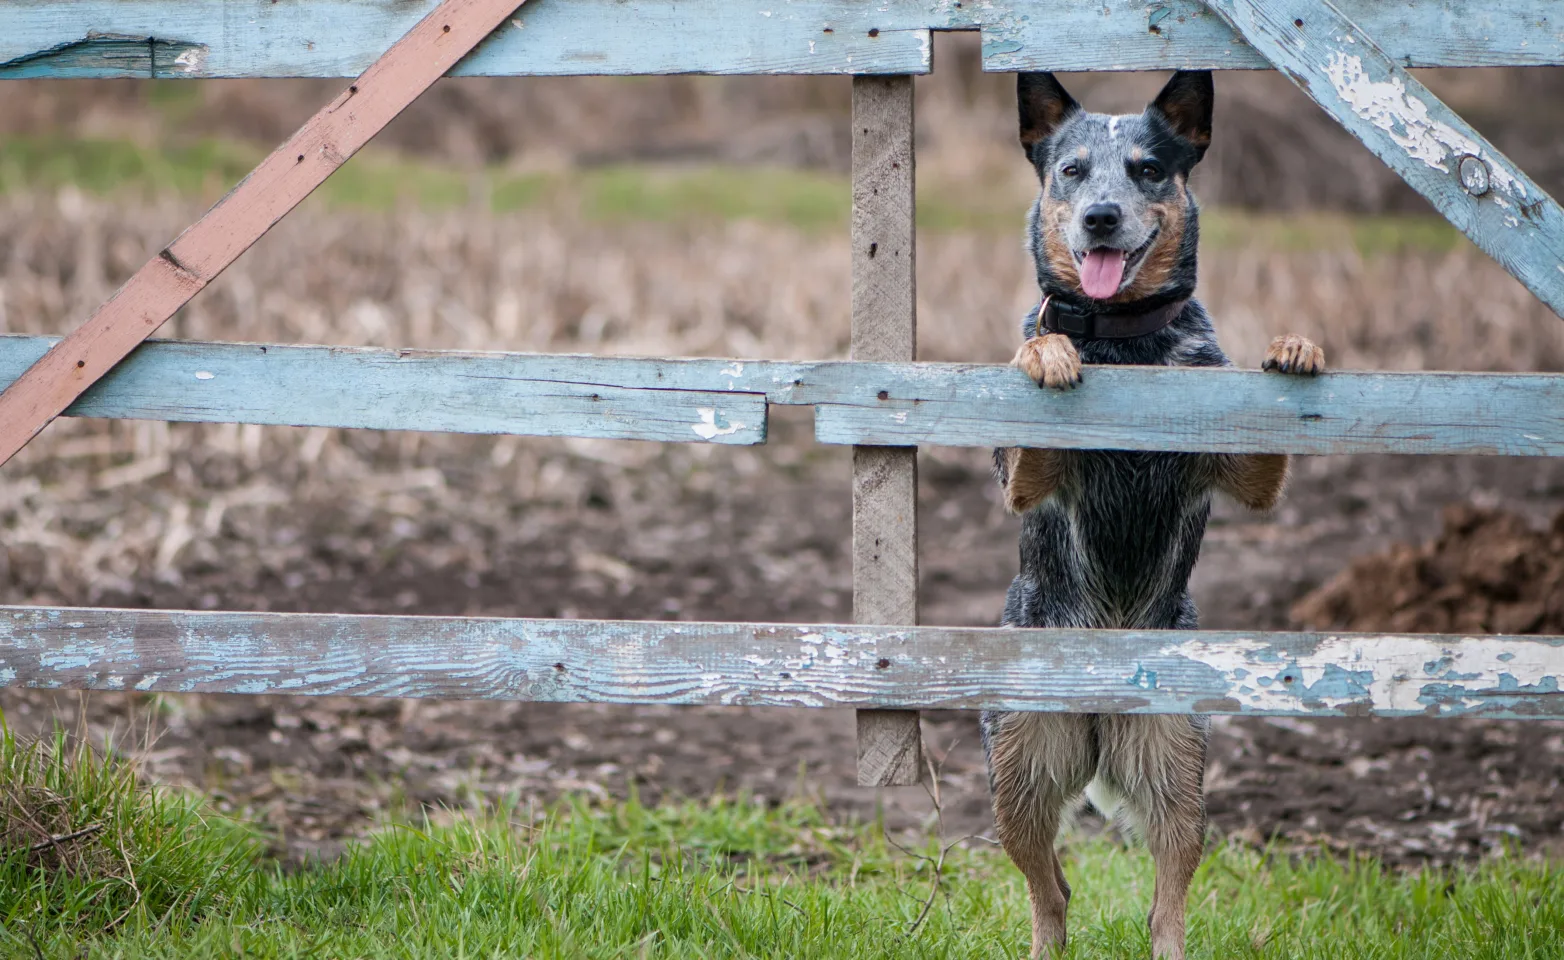 A dog looks through a fence